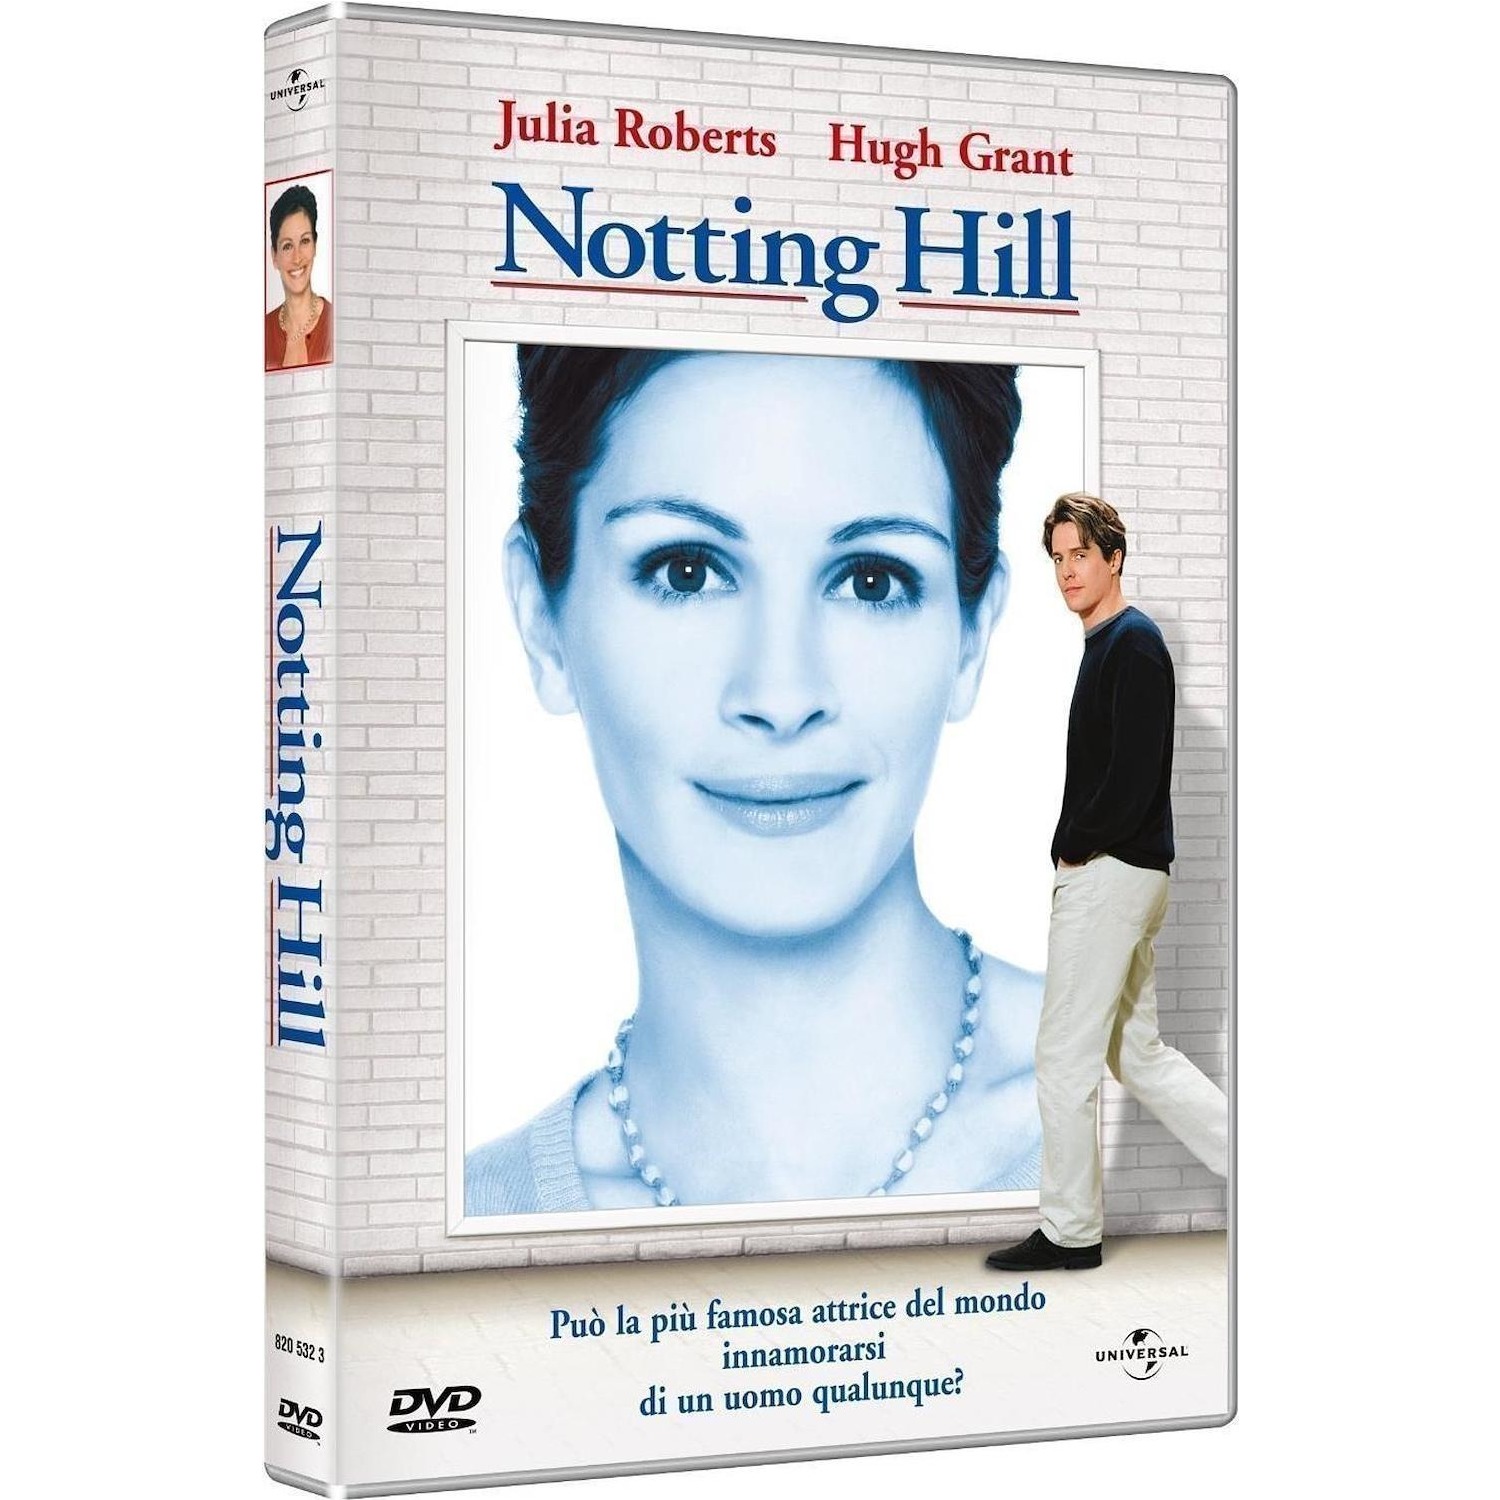 Immagine per DVD Notting Hill da DIMOStore